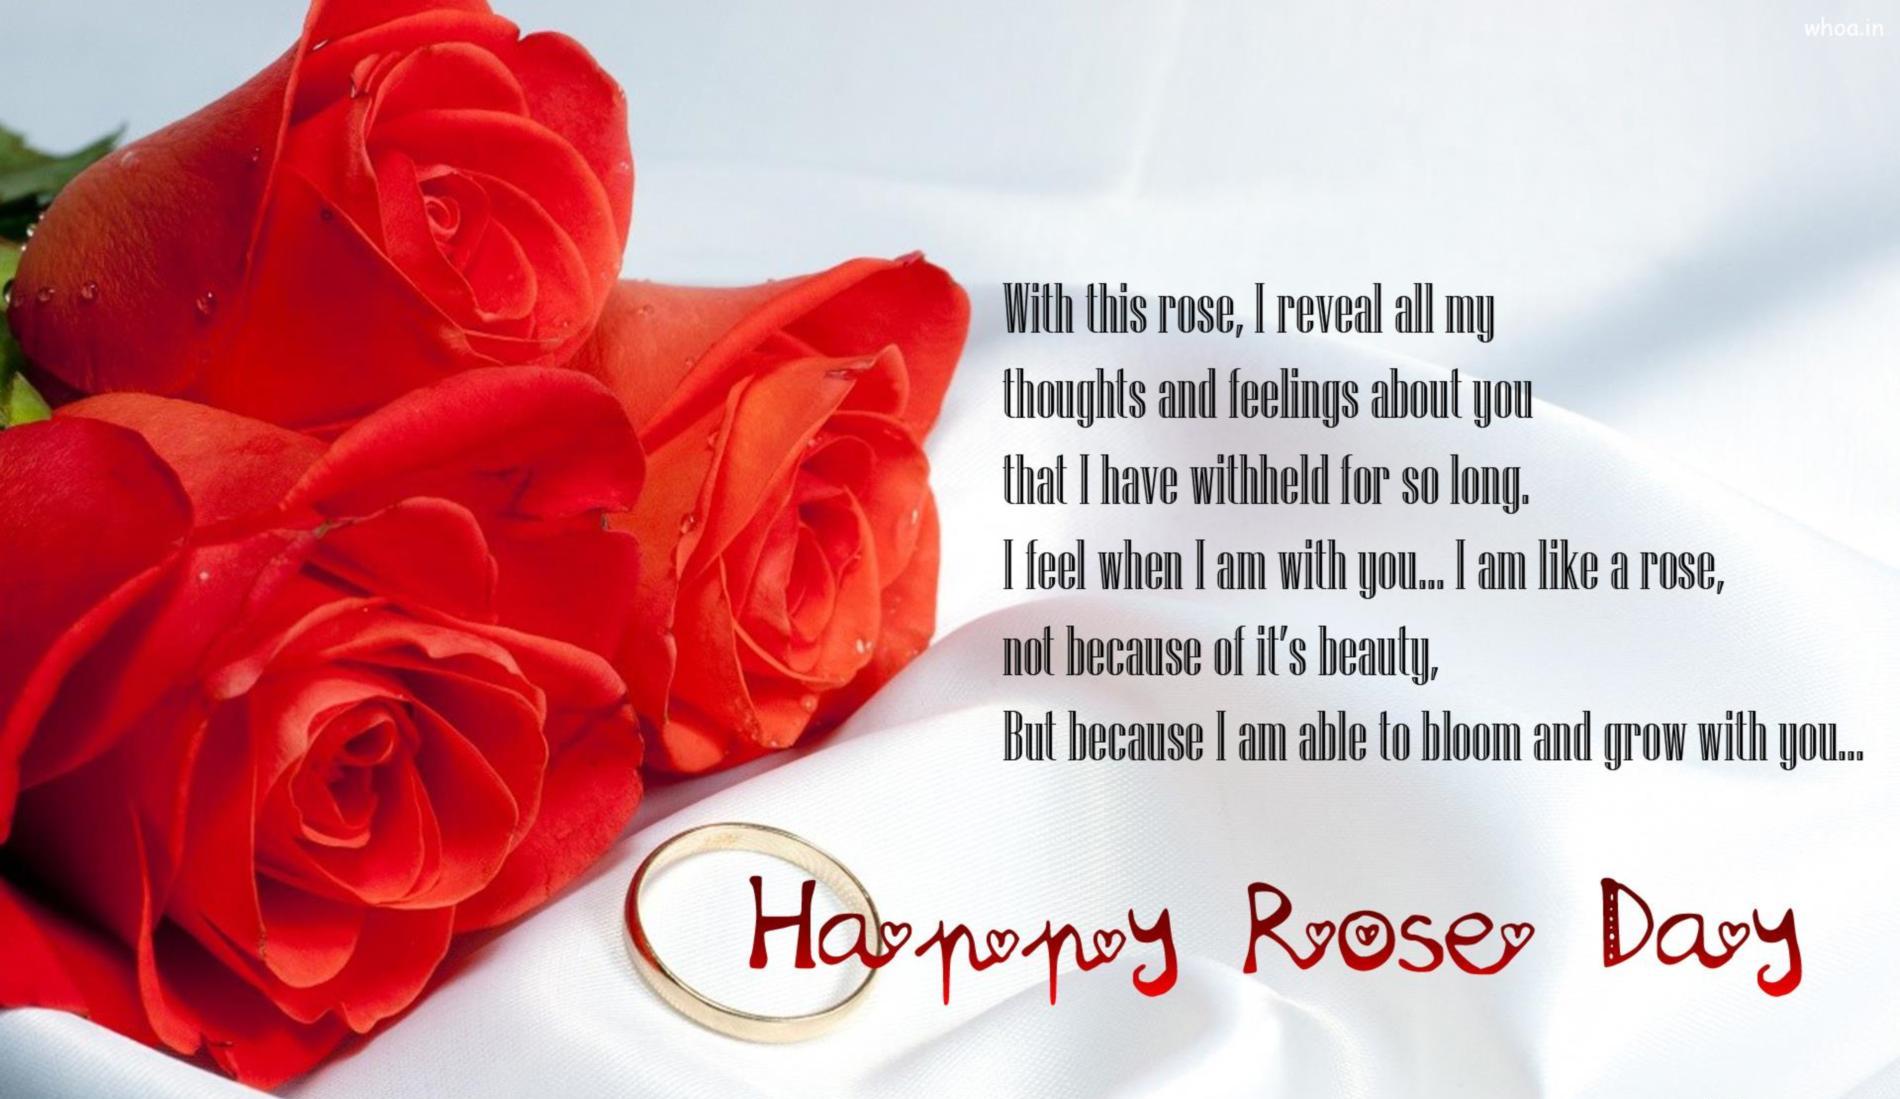 Rose Day 2020 Greeting